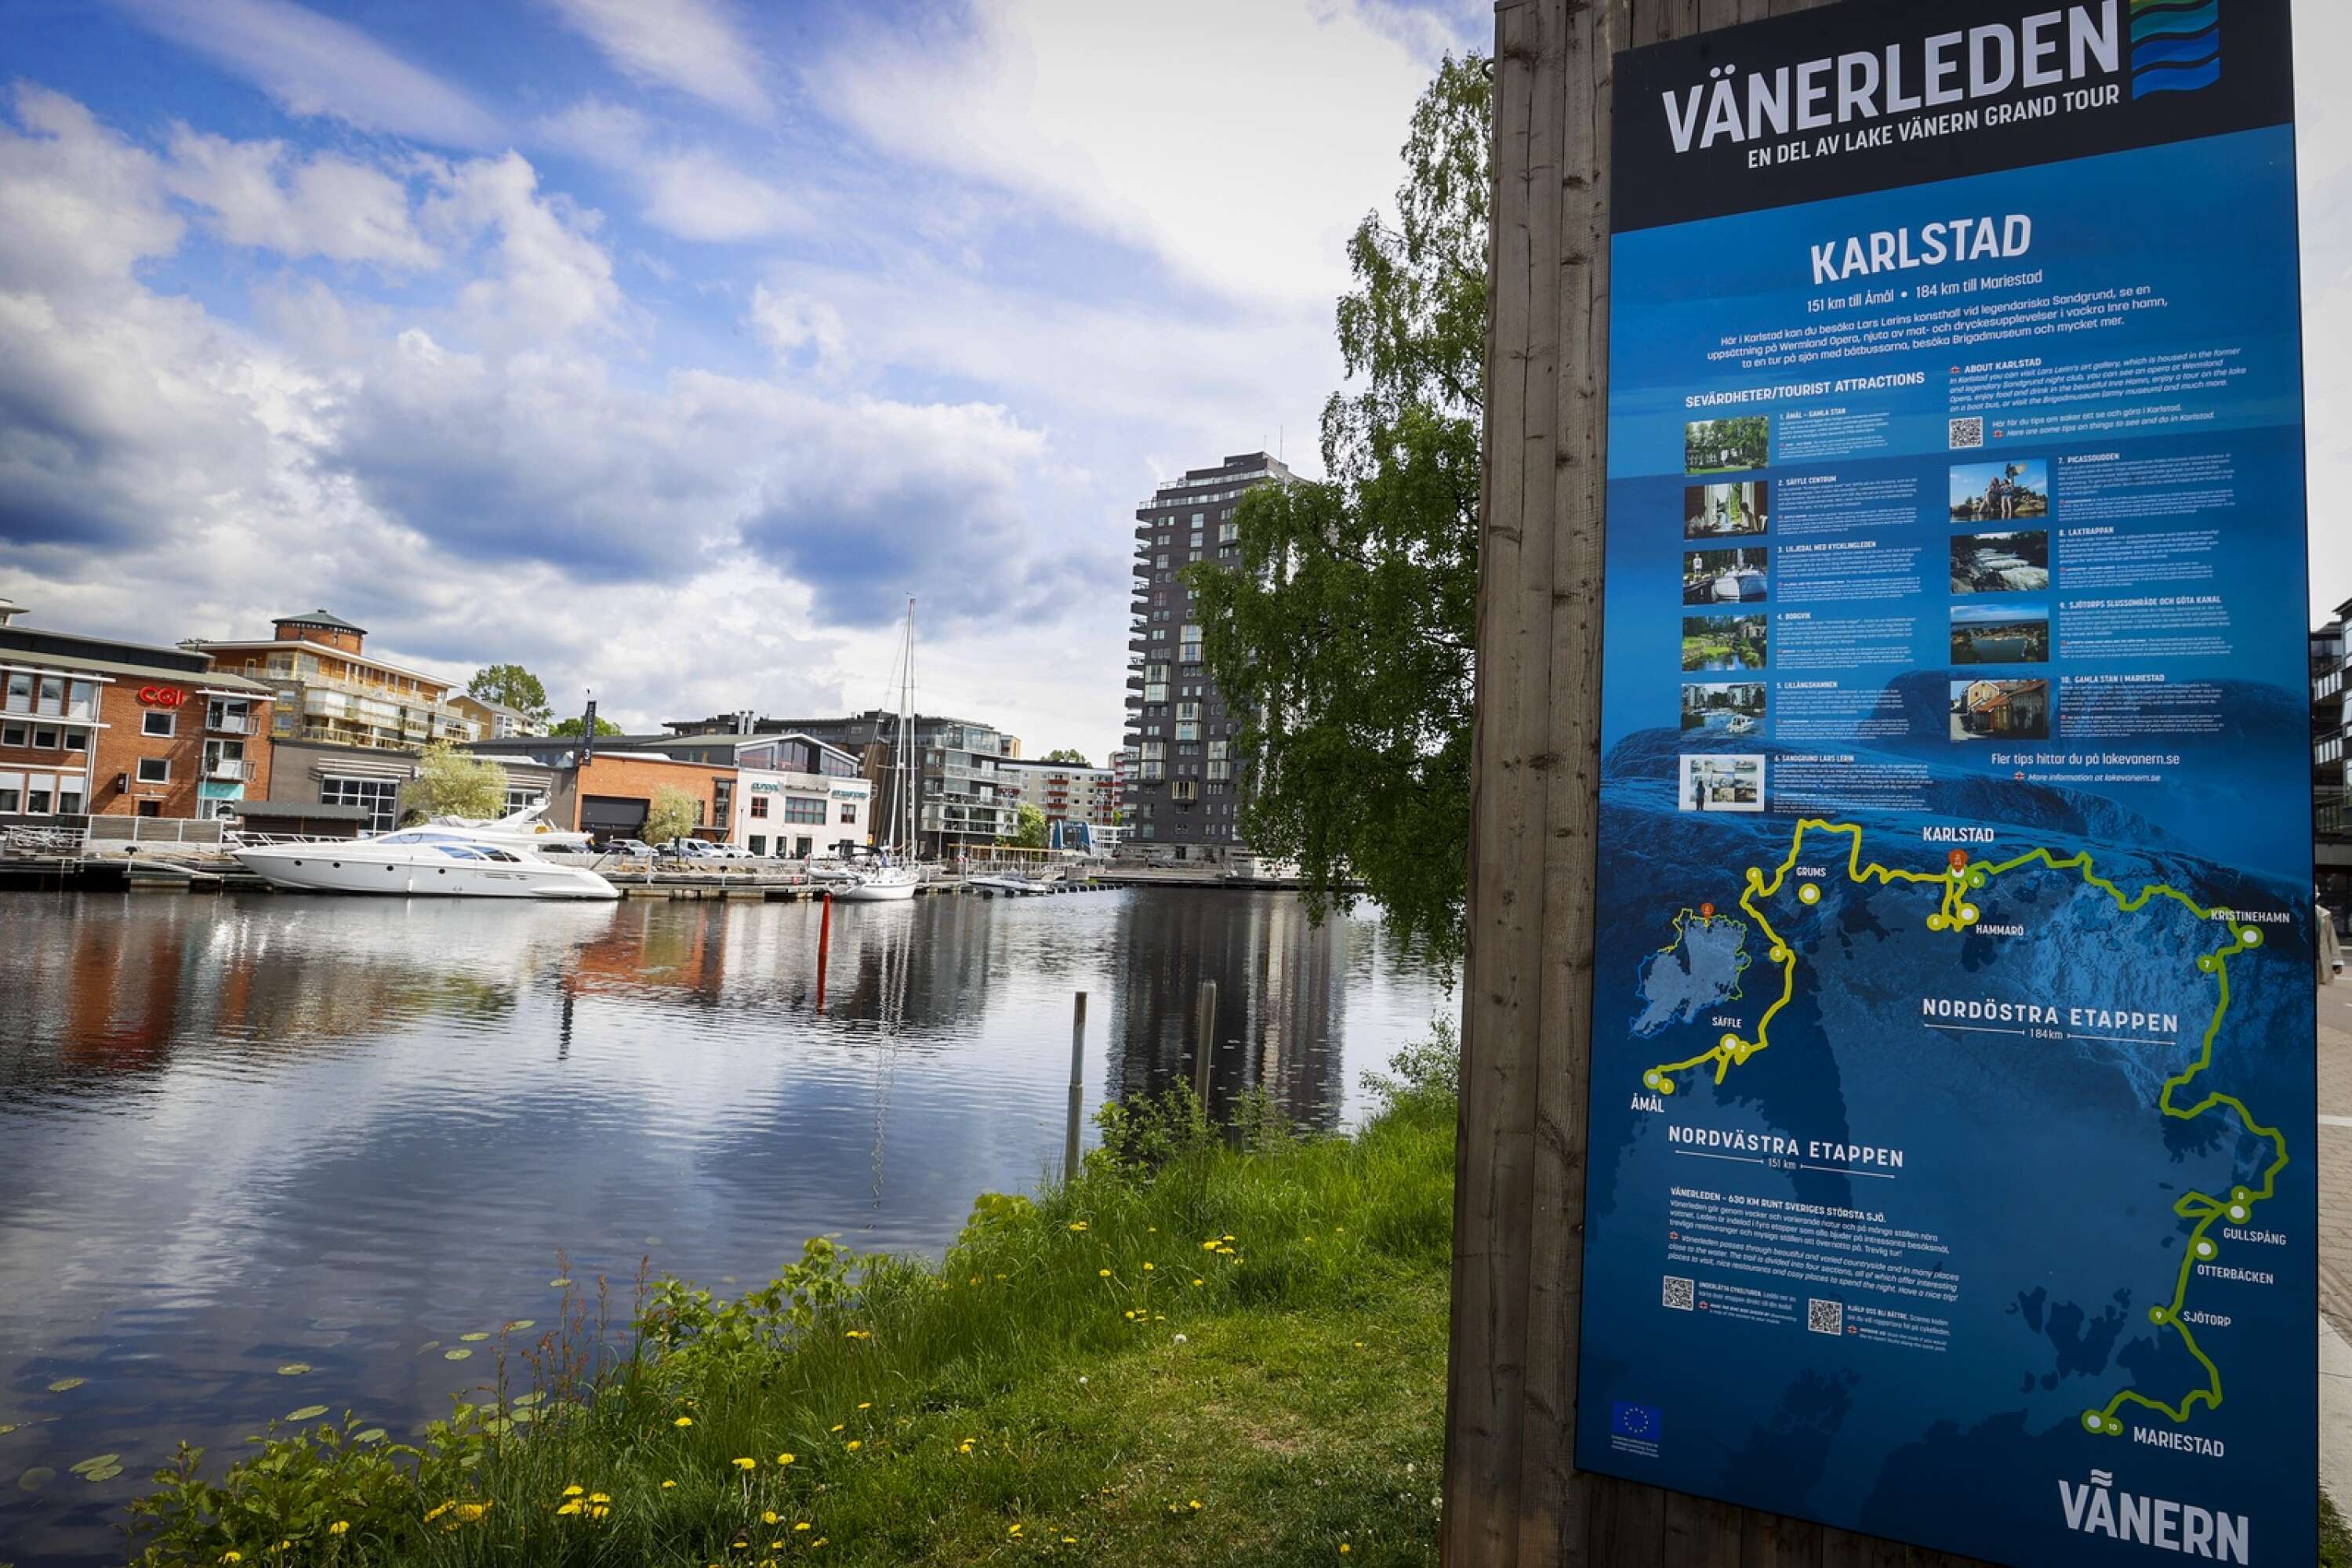 Nytt för i år är att båtbussarna går till Vålberg.